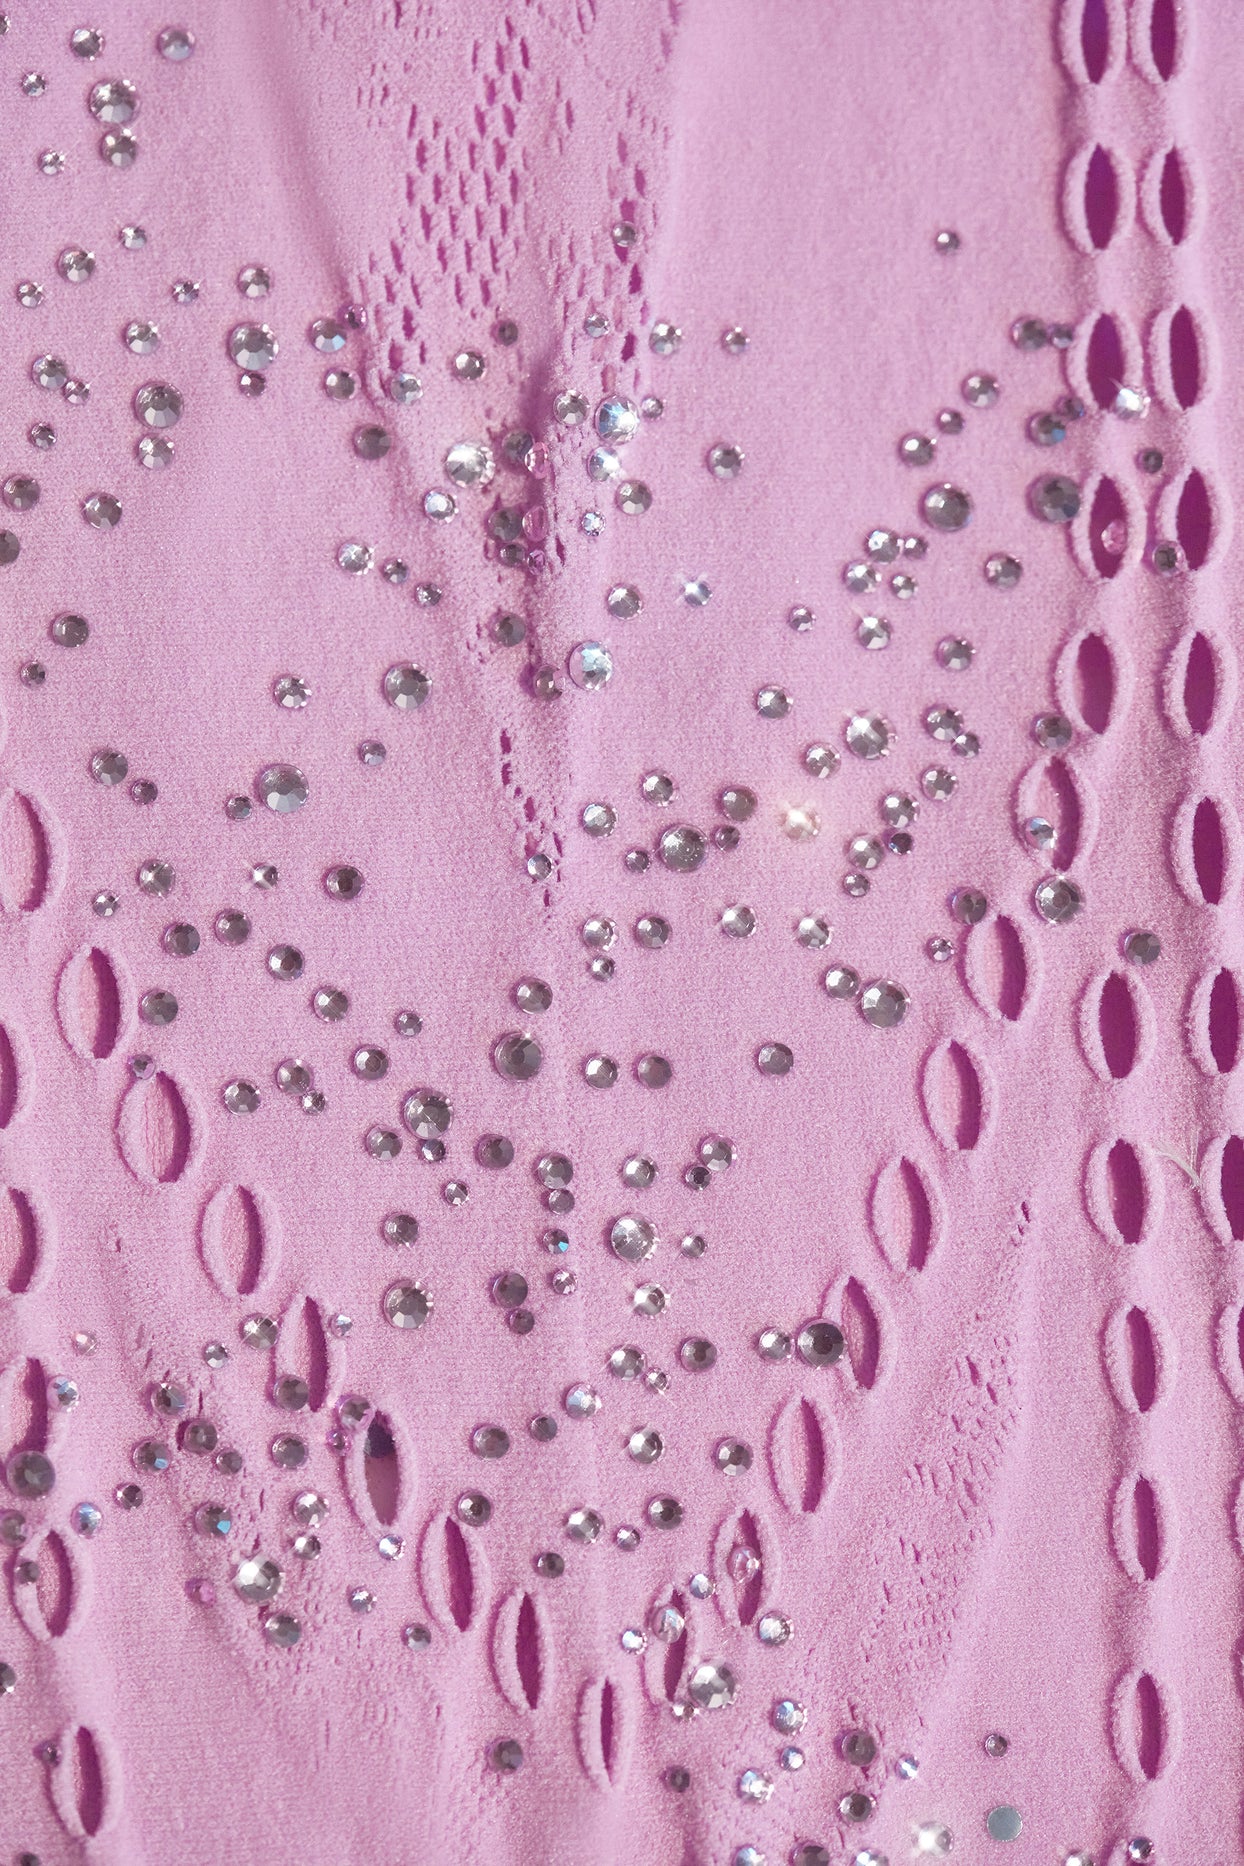 Ozdobiona sukienka mini z dekoltem typu halter w kolorze fioletowo-różowym